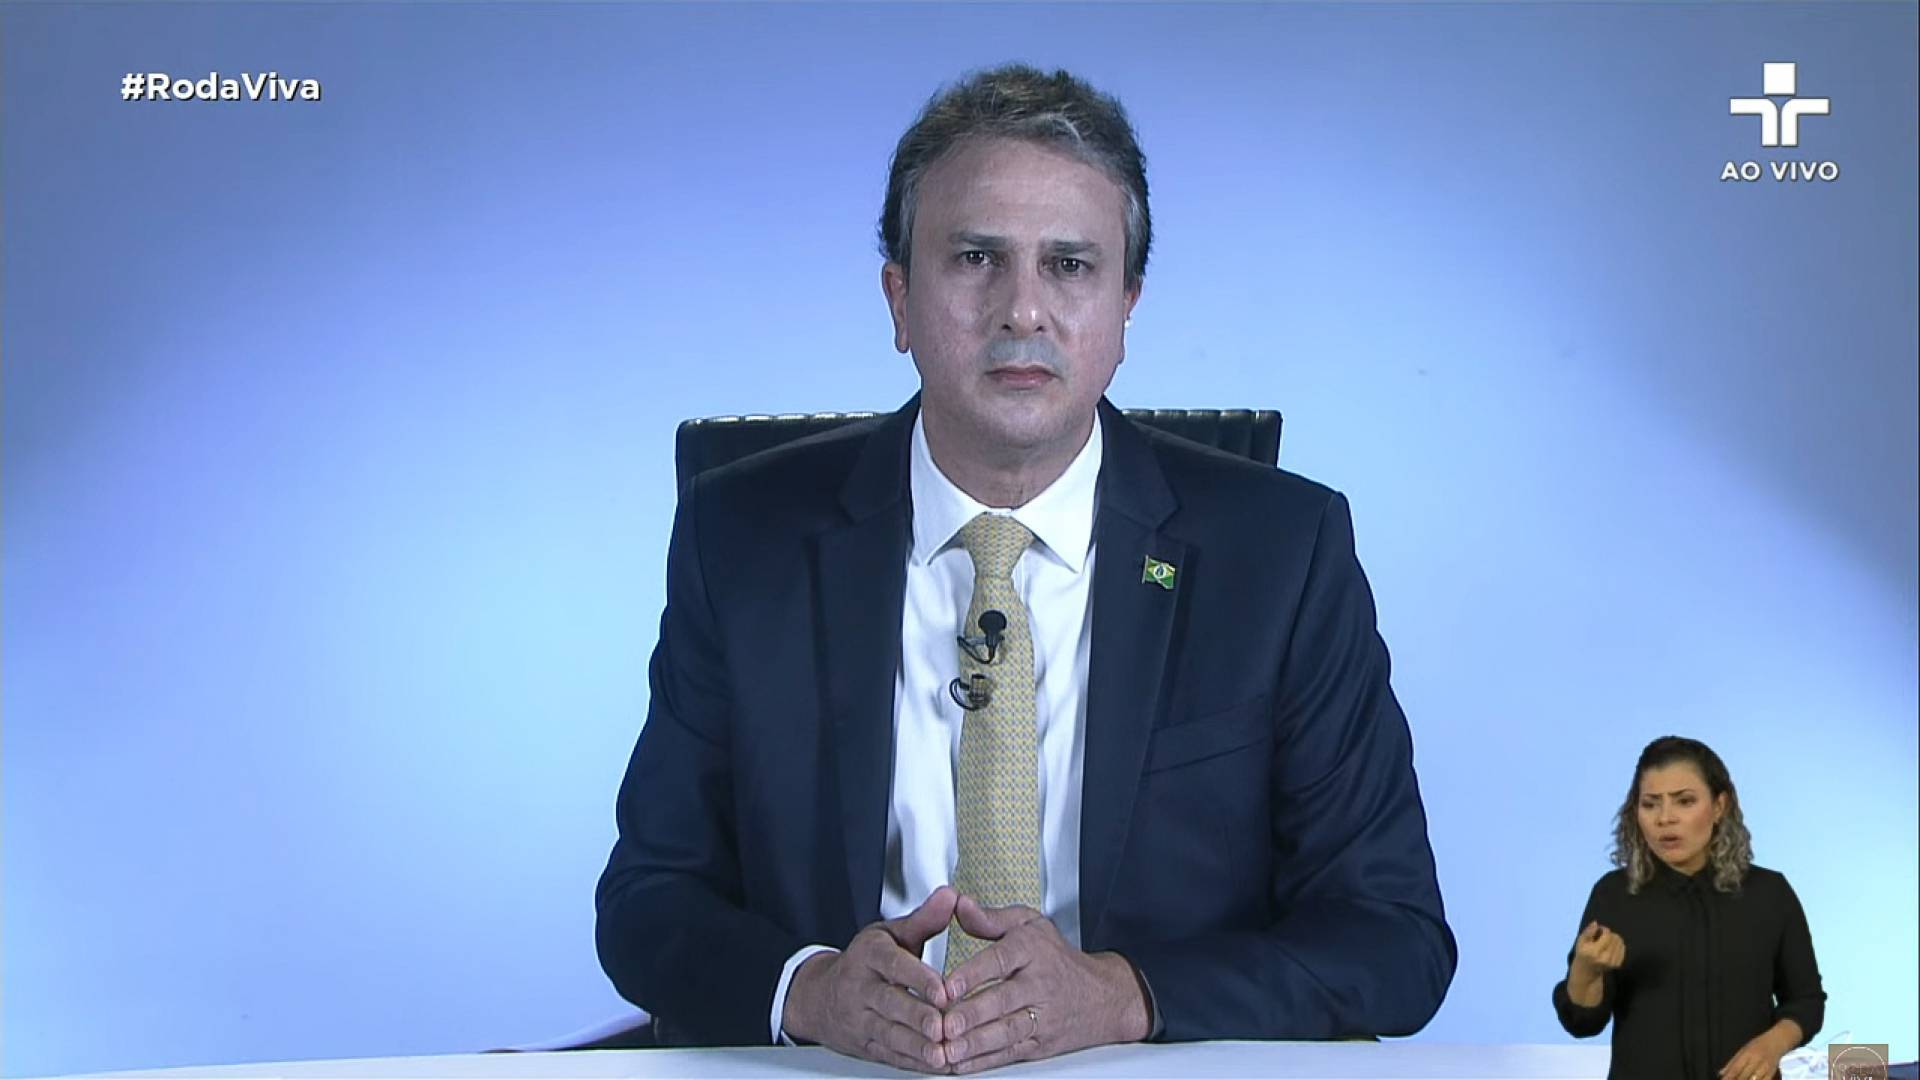 8 de junho de 2020, O governador do estado do Ceara, Camilo Santana, da entrevista ao programa Roda Viva, da tv cultura. (Foto Reprodução/Youtube) (Foto: Reprodução)